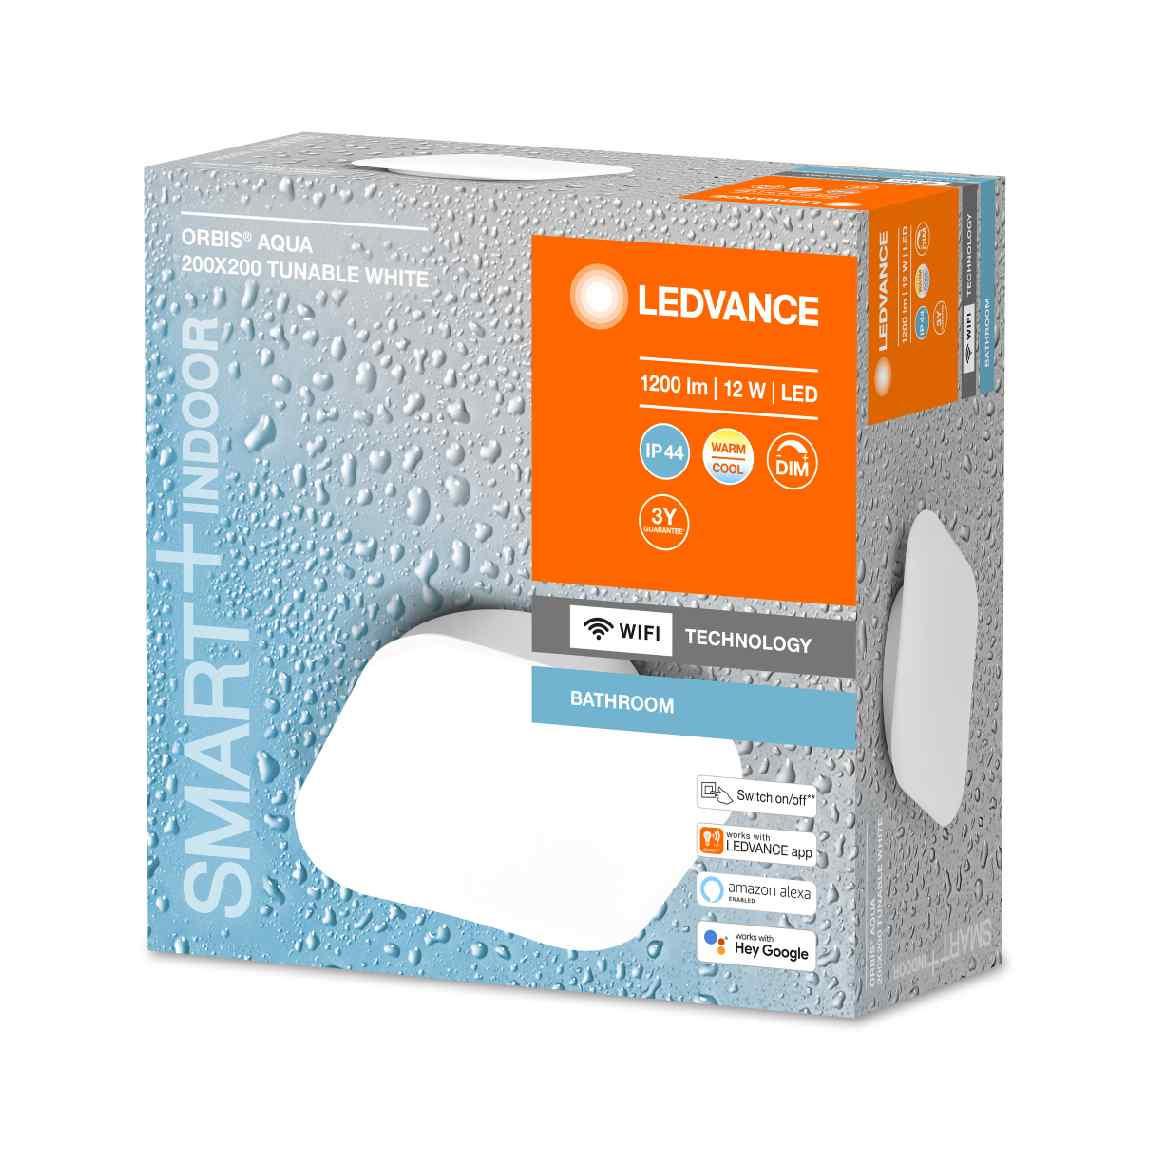 Ledvance SMART+ Orbis Aqua Bad-Deckenleuchte 200mm x 200mm Warm- und Kaltweiß_Verpackung